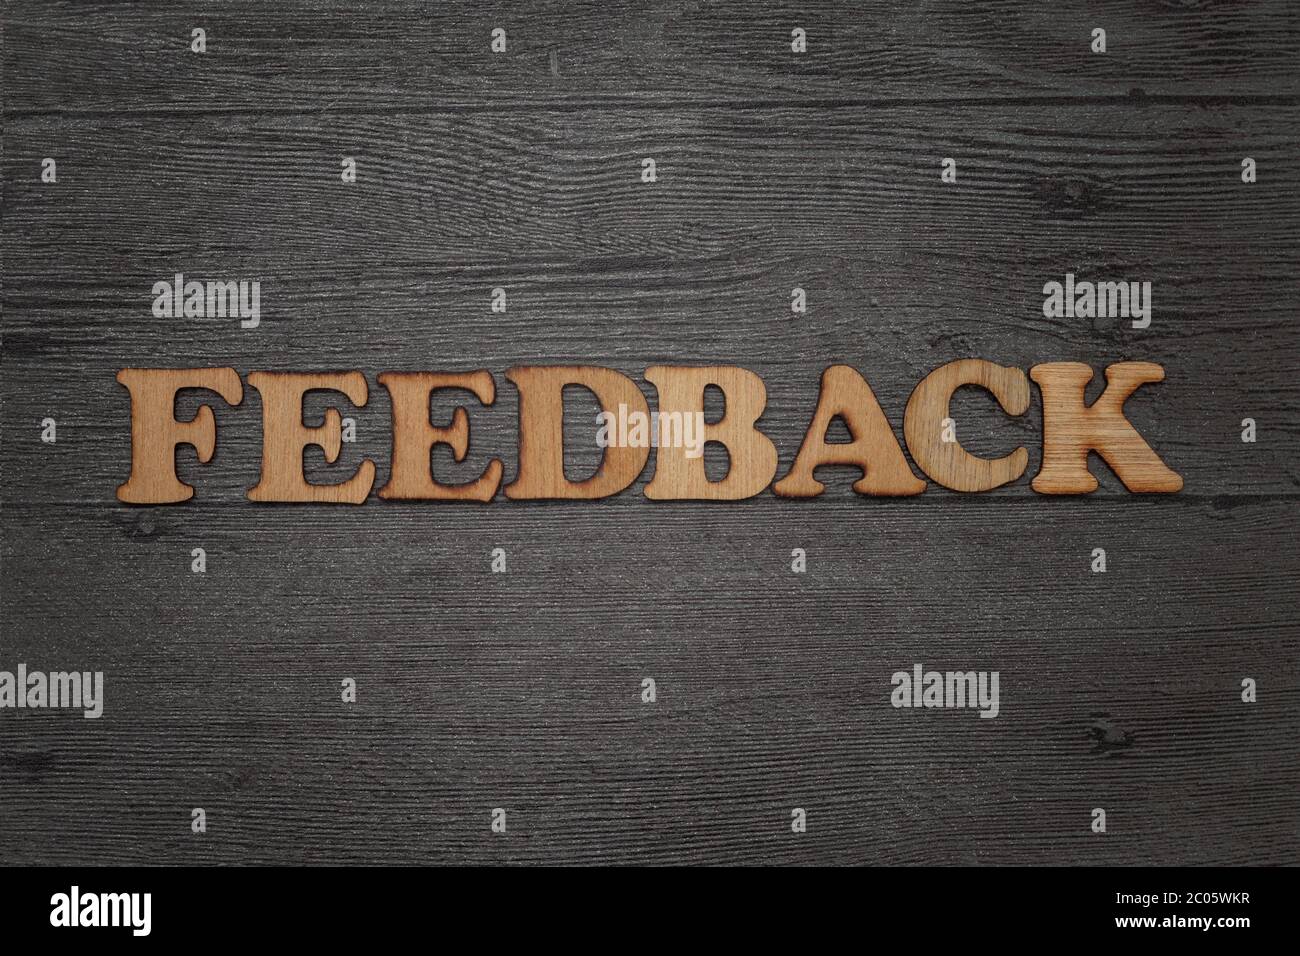 Parola di feedback, ordinata in alfabeto ligneo, su sfondo scuro grunge Foto Stock